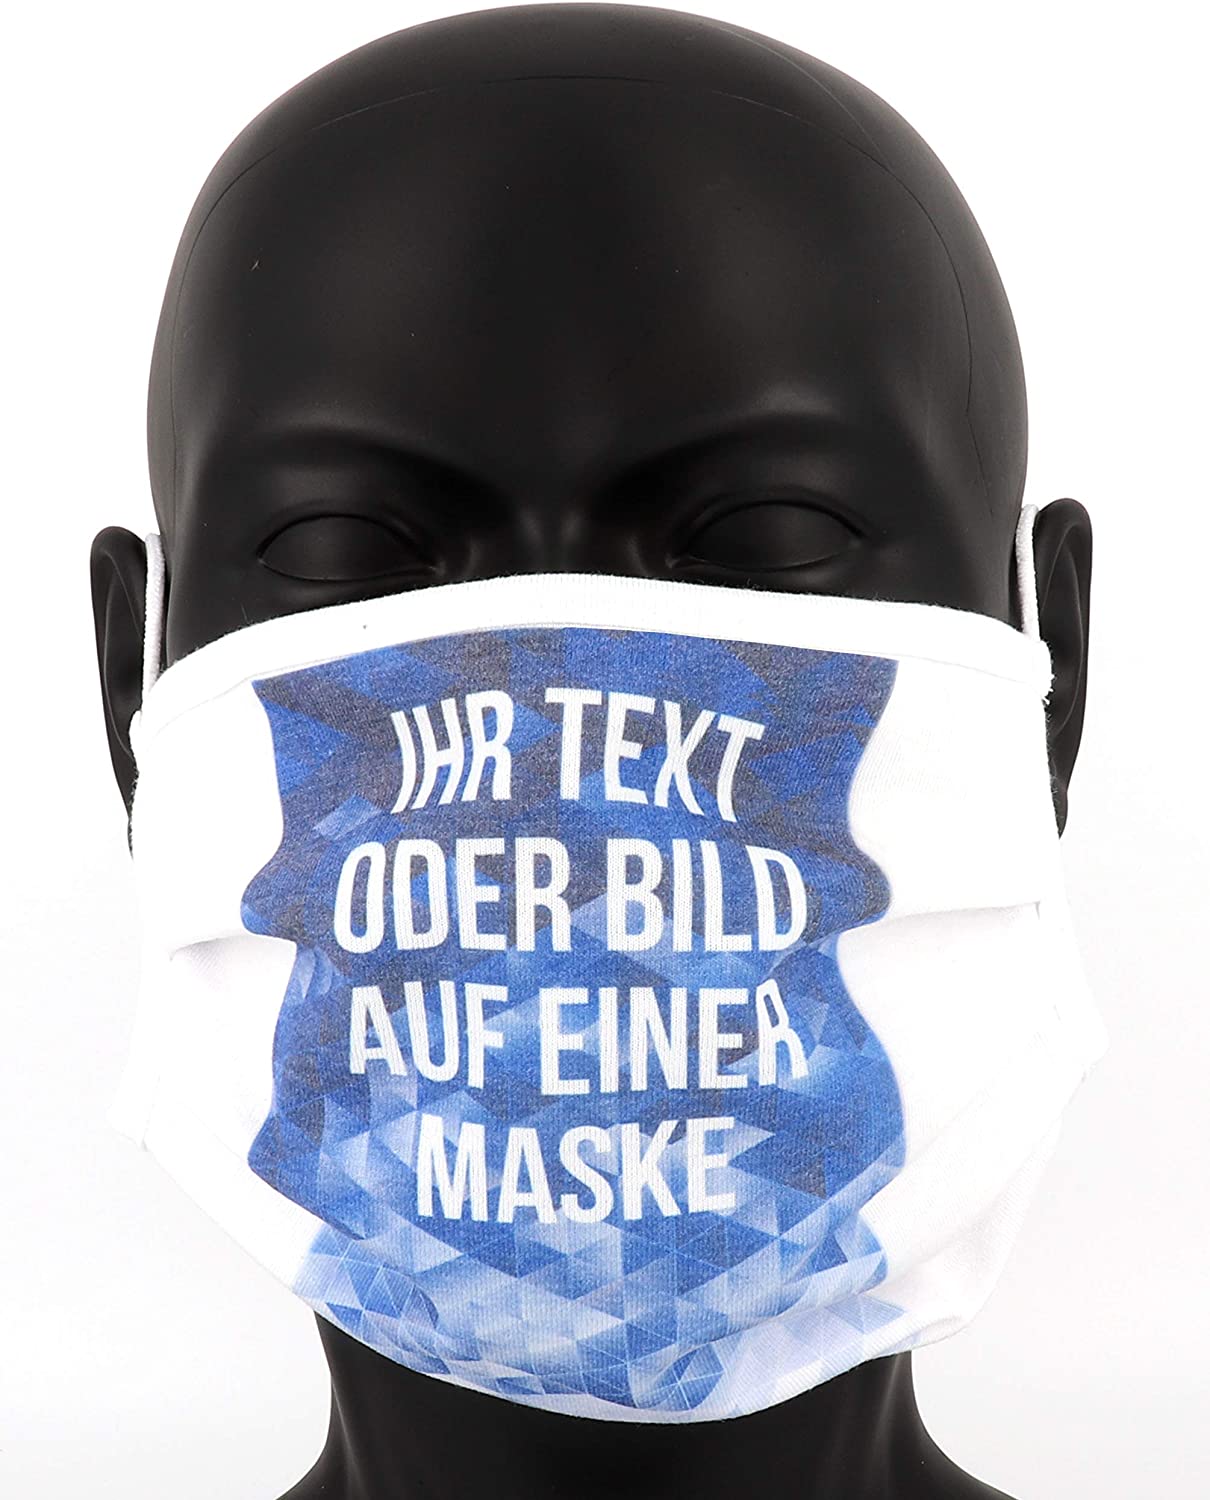 PICSonPAPER Community Maske Bedrucken mit eigenem Bild oder Text, Maske selbst gestalten, Individuelle Community Maske